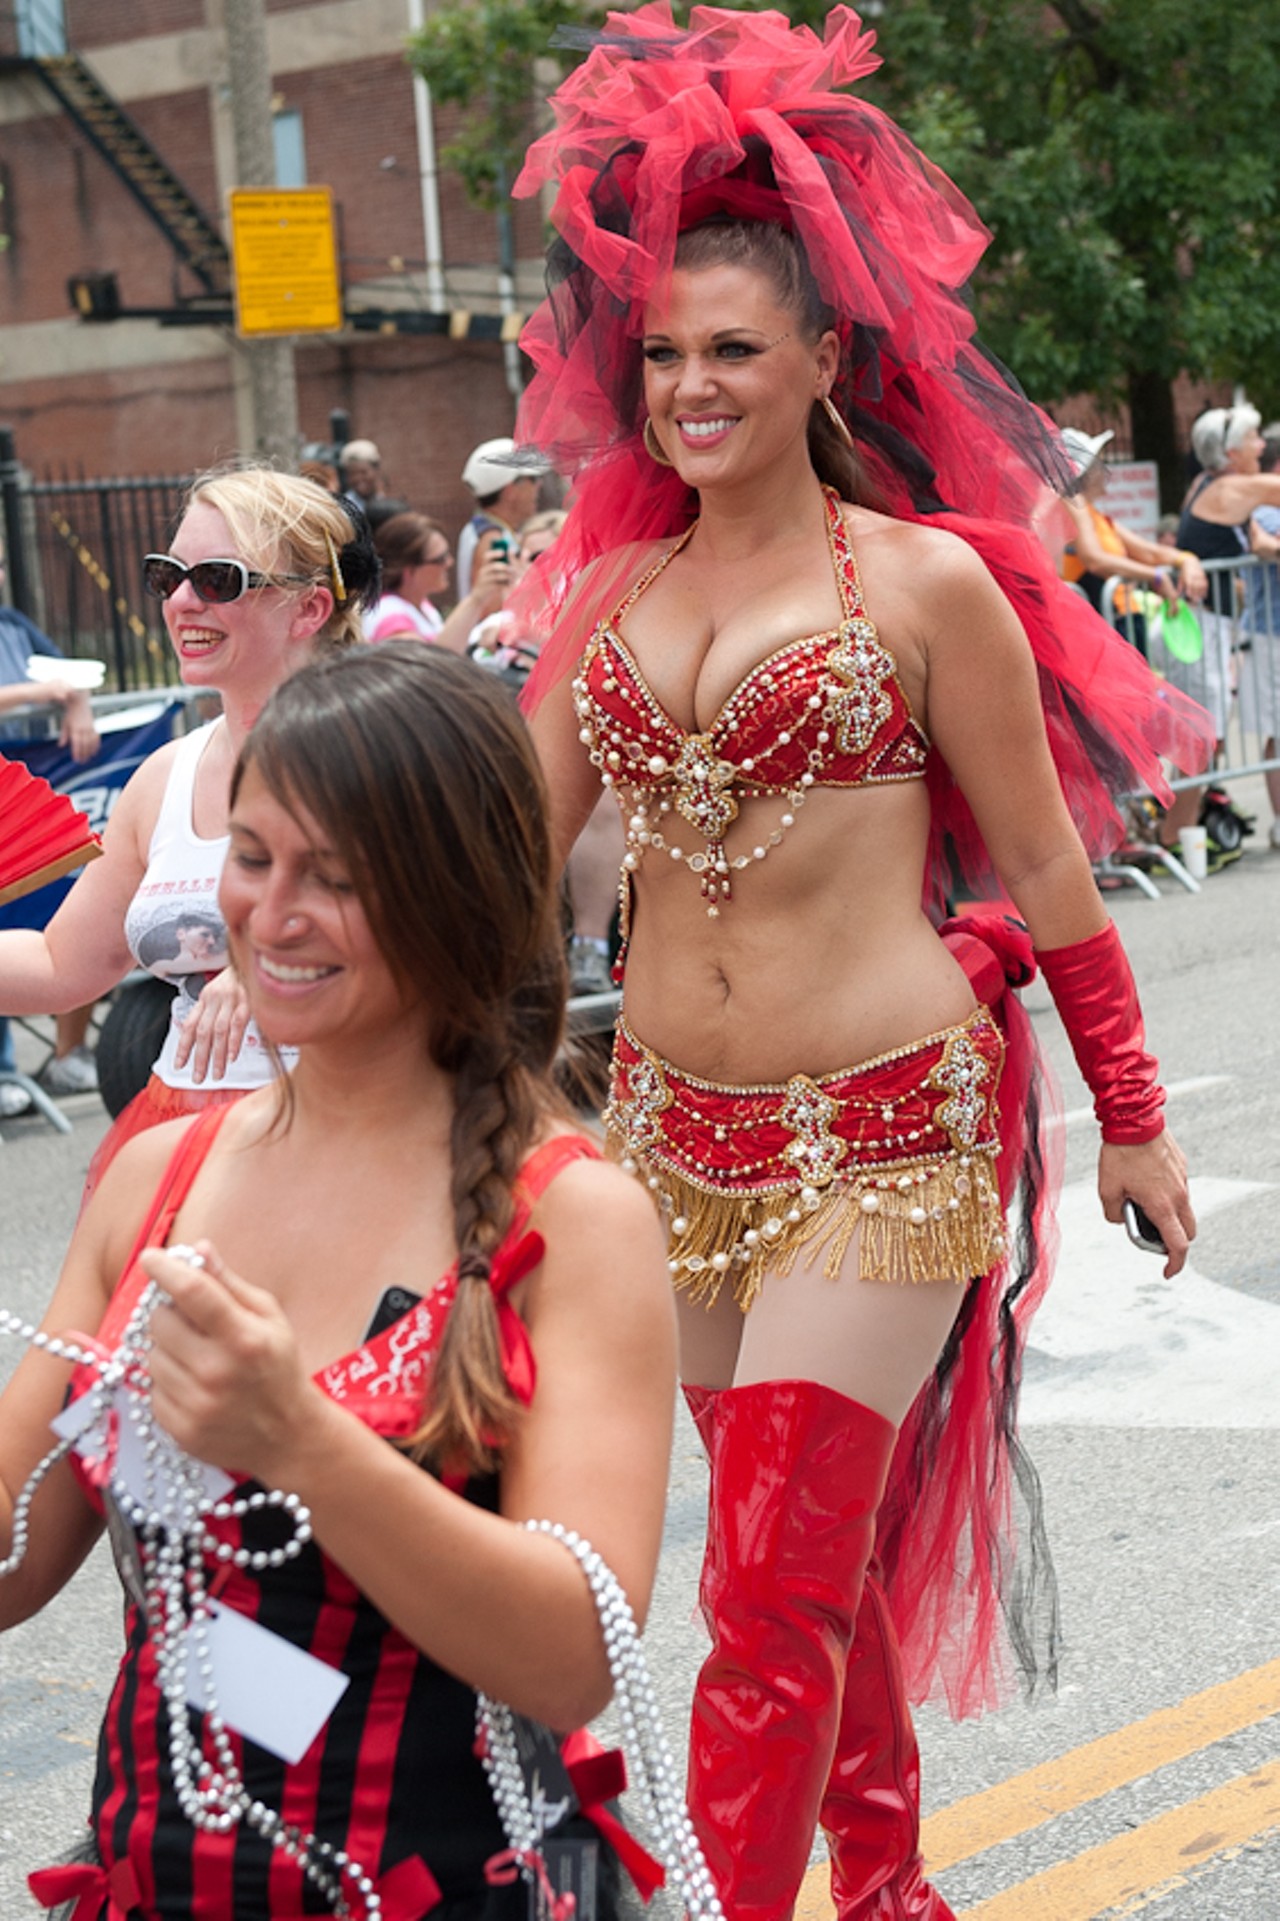 Pridefest 2012 - St. Louis, Part 2